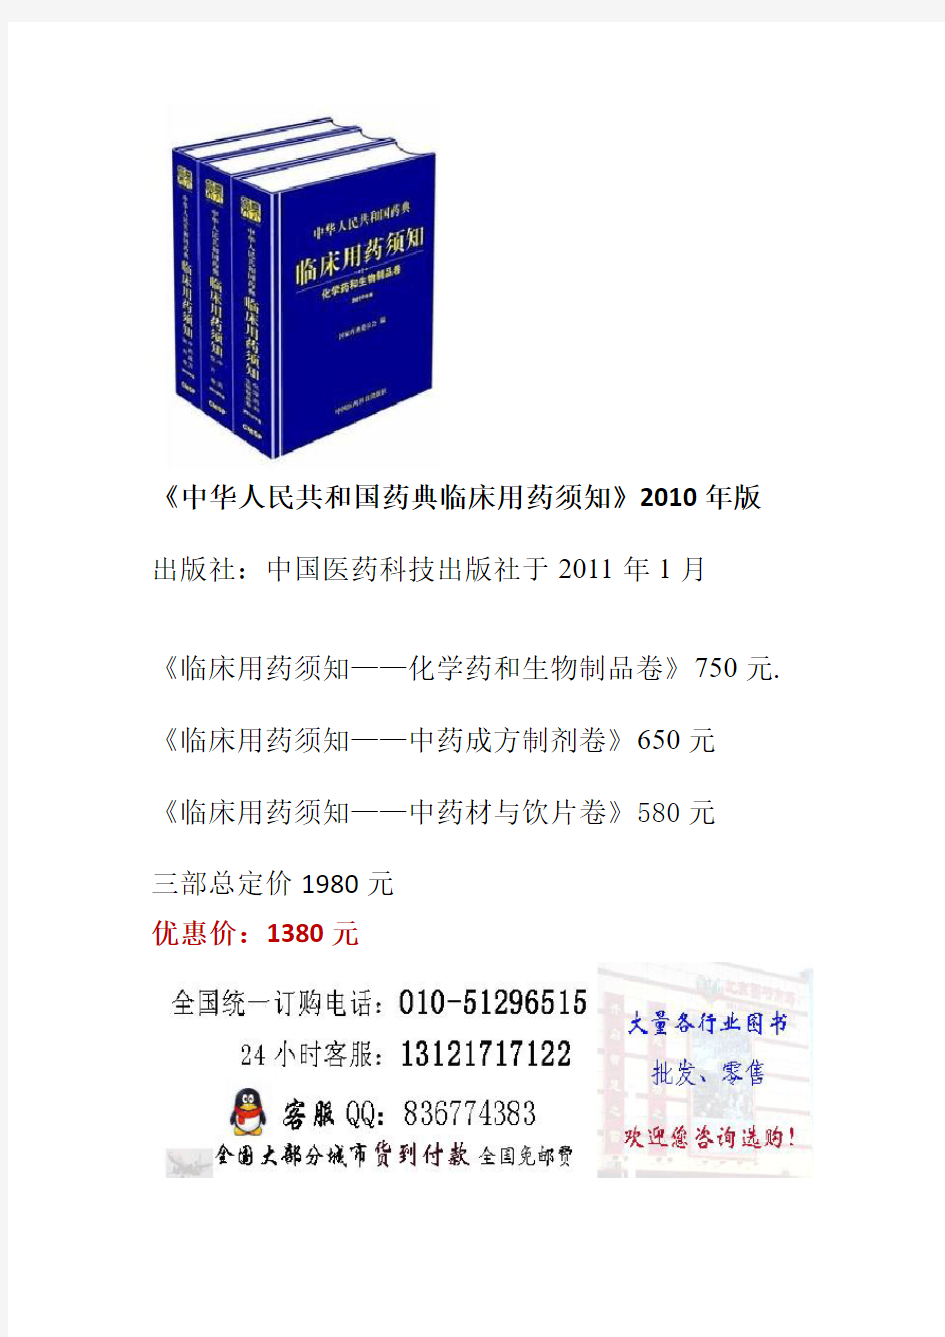 《中华人民共和国药典临床用药须知》2010年版